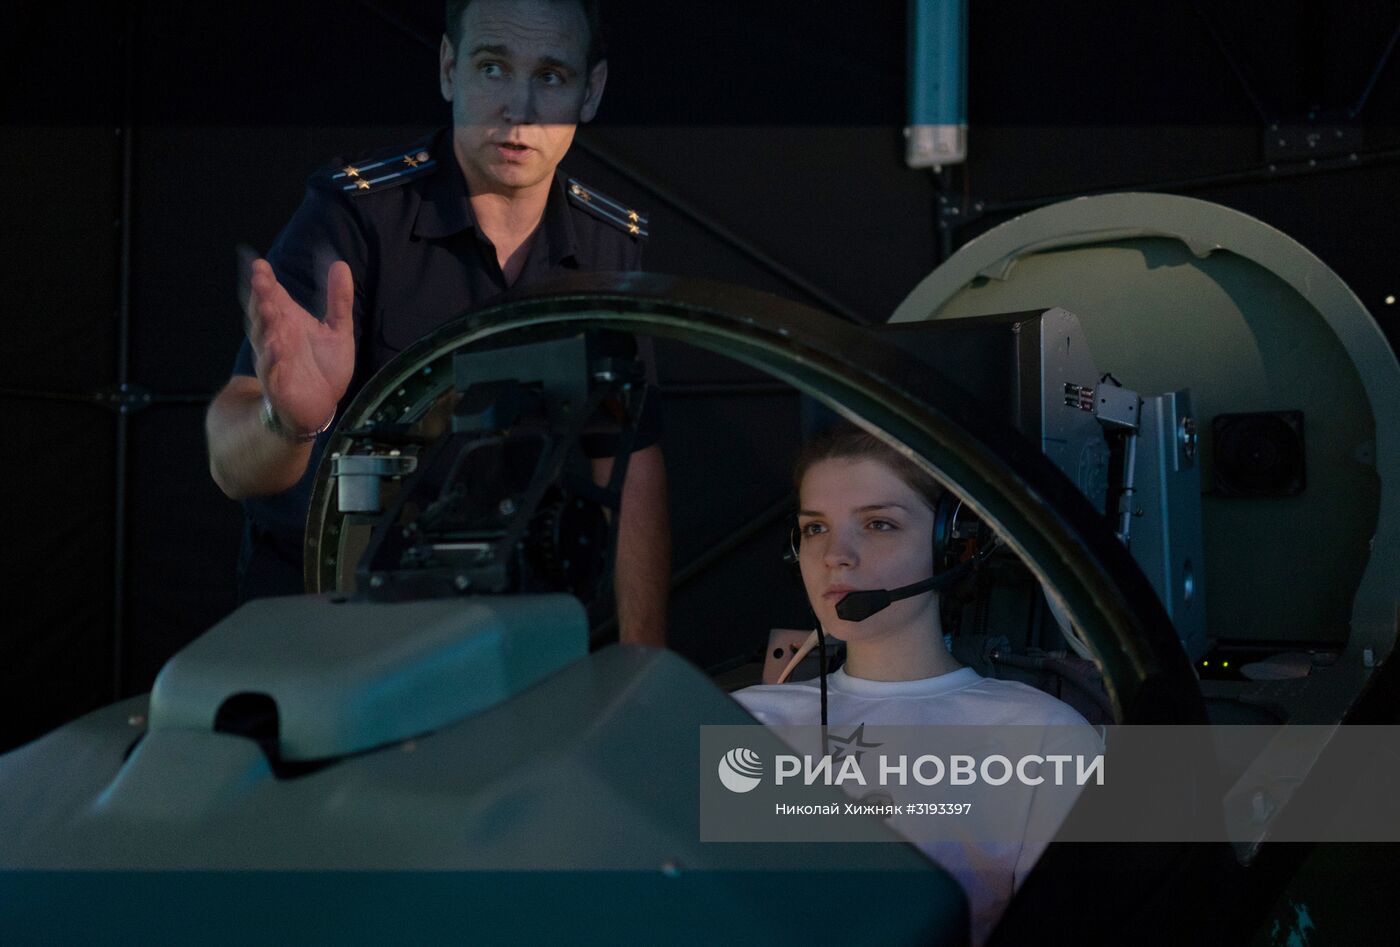 Вступительные испытания девушек при приеме в Краснодарское авиационное училище